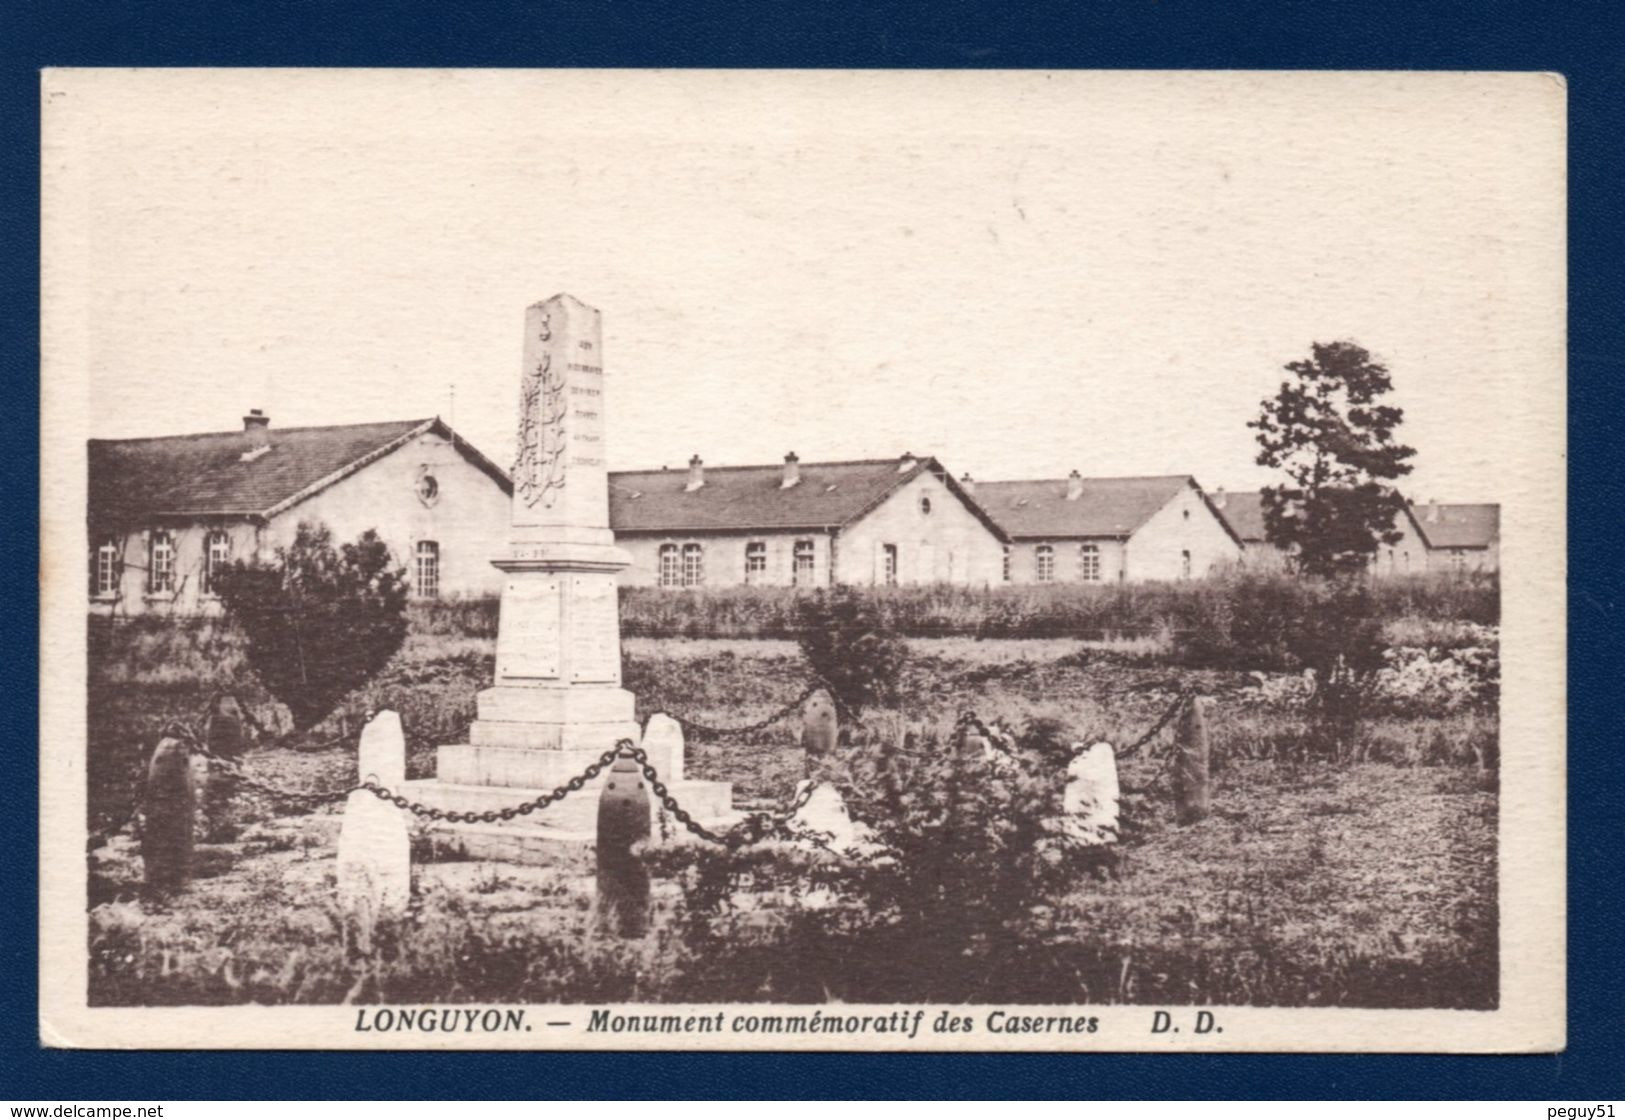 54. Longuyon. Monument Commémoratifs Des Casernes Lamy. (9è B.C.P Et 18è B.C.P.- 1914-18 - Cimetière Ste- Agathe) - War Memorials